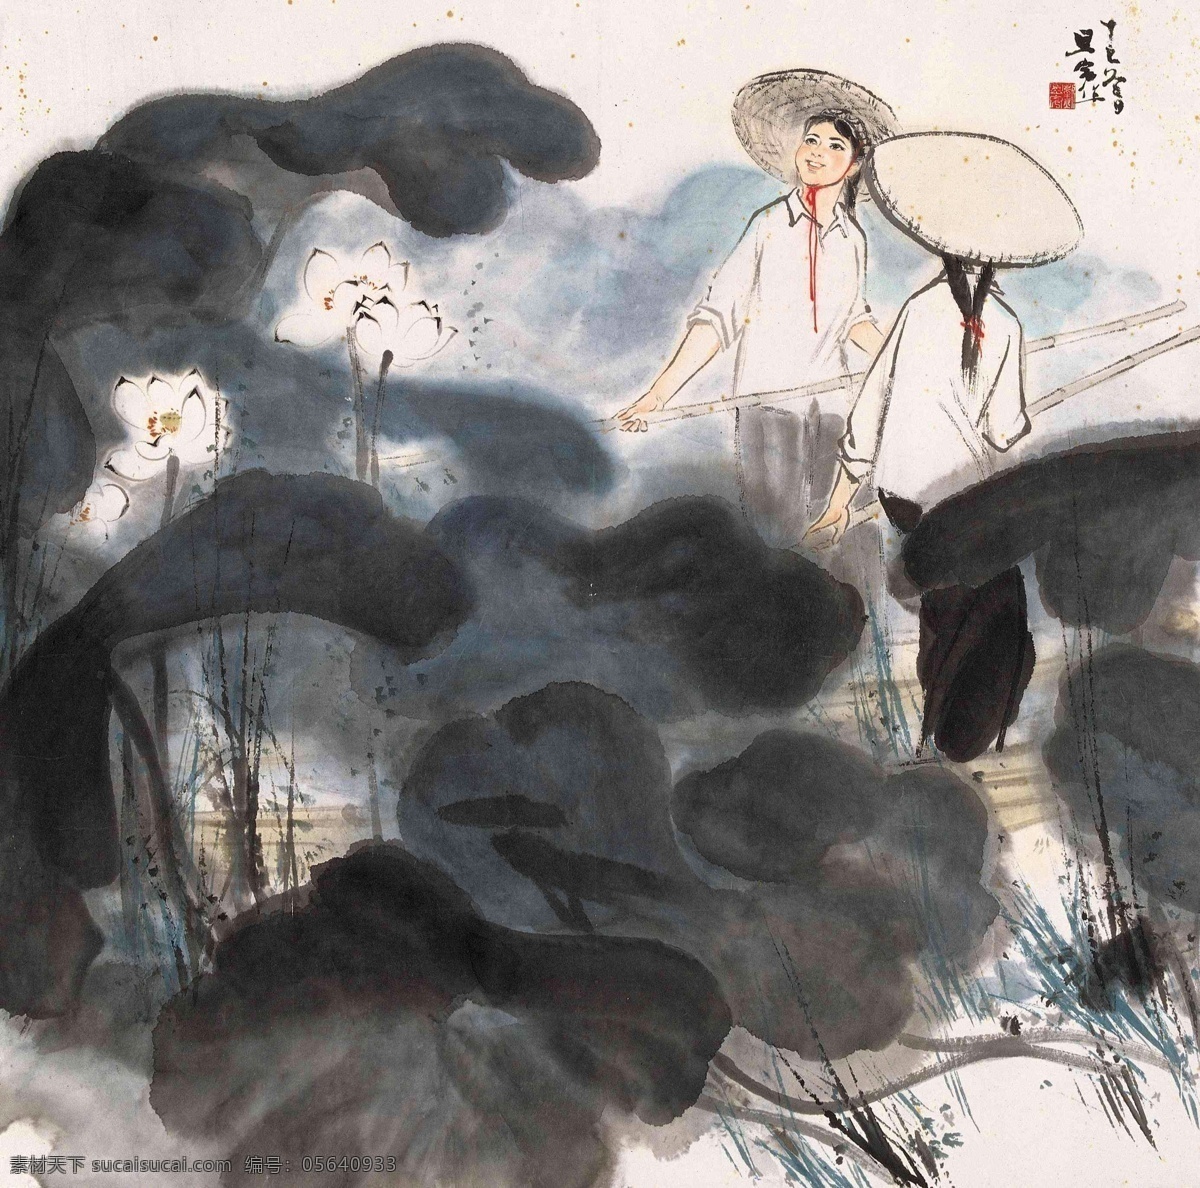 刘旦宅 国画图片 国画 中国画 传统画 名家 绘画 文化艺术 绘画书法 水墨 传统文化